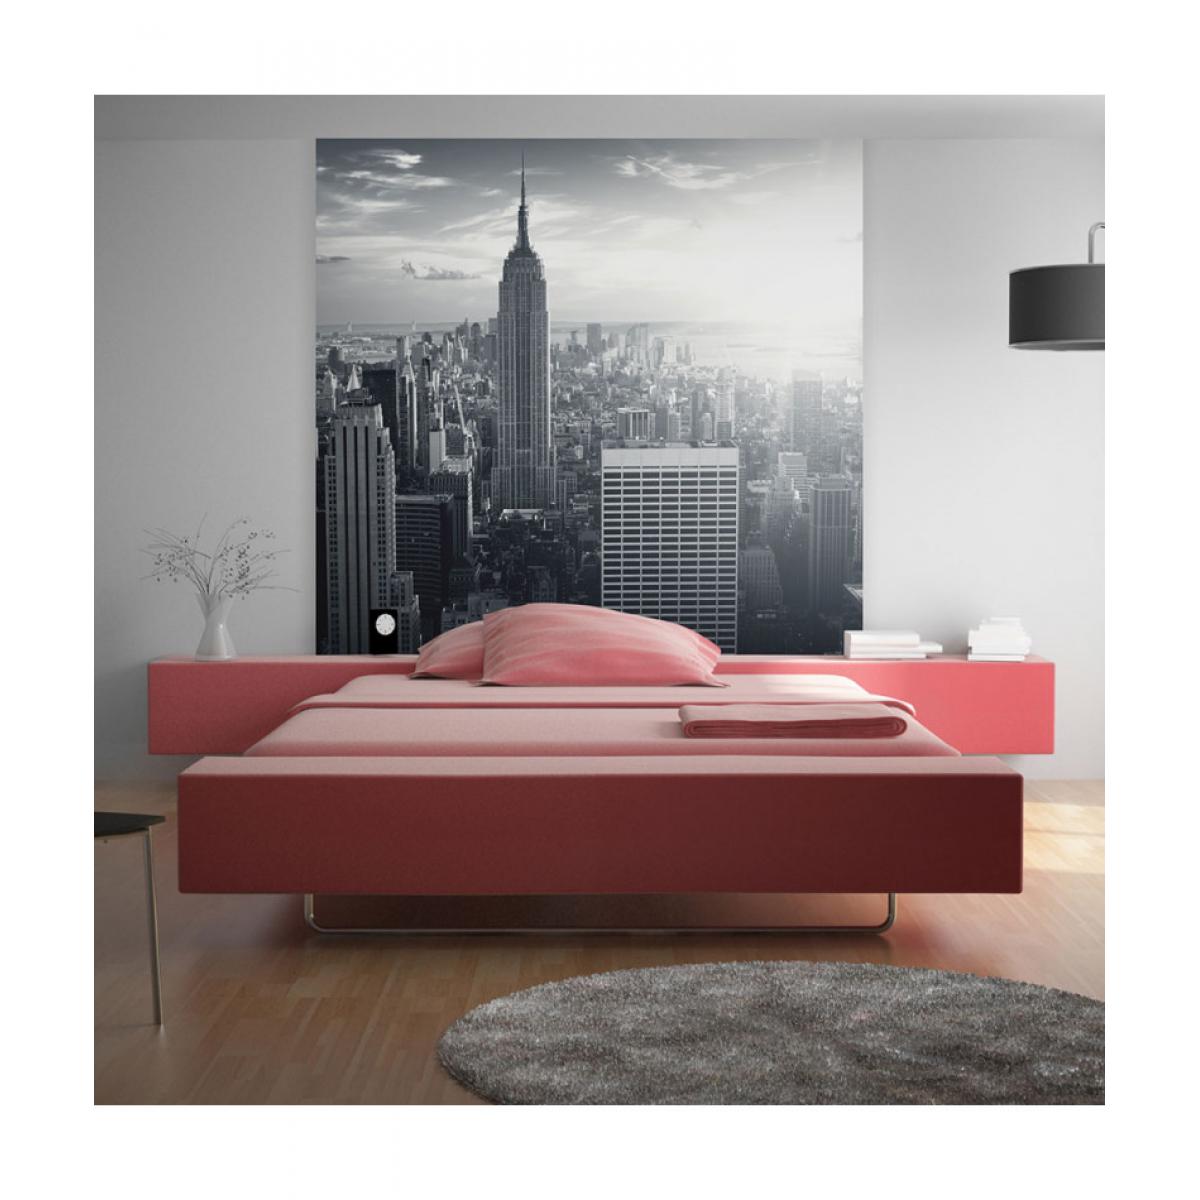 Artgeist - Papier peint - Manhattan new-yorkais au lever de soleil 300x231 - Papier peint